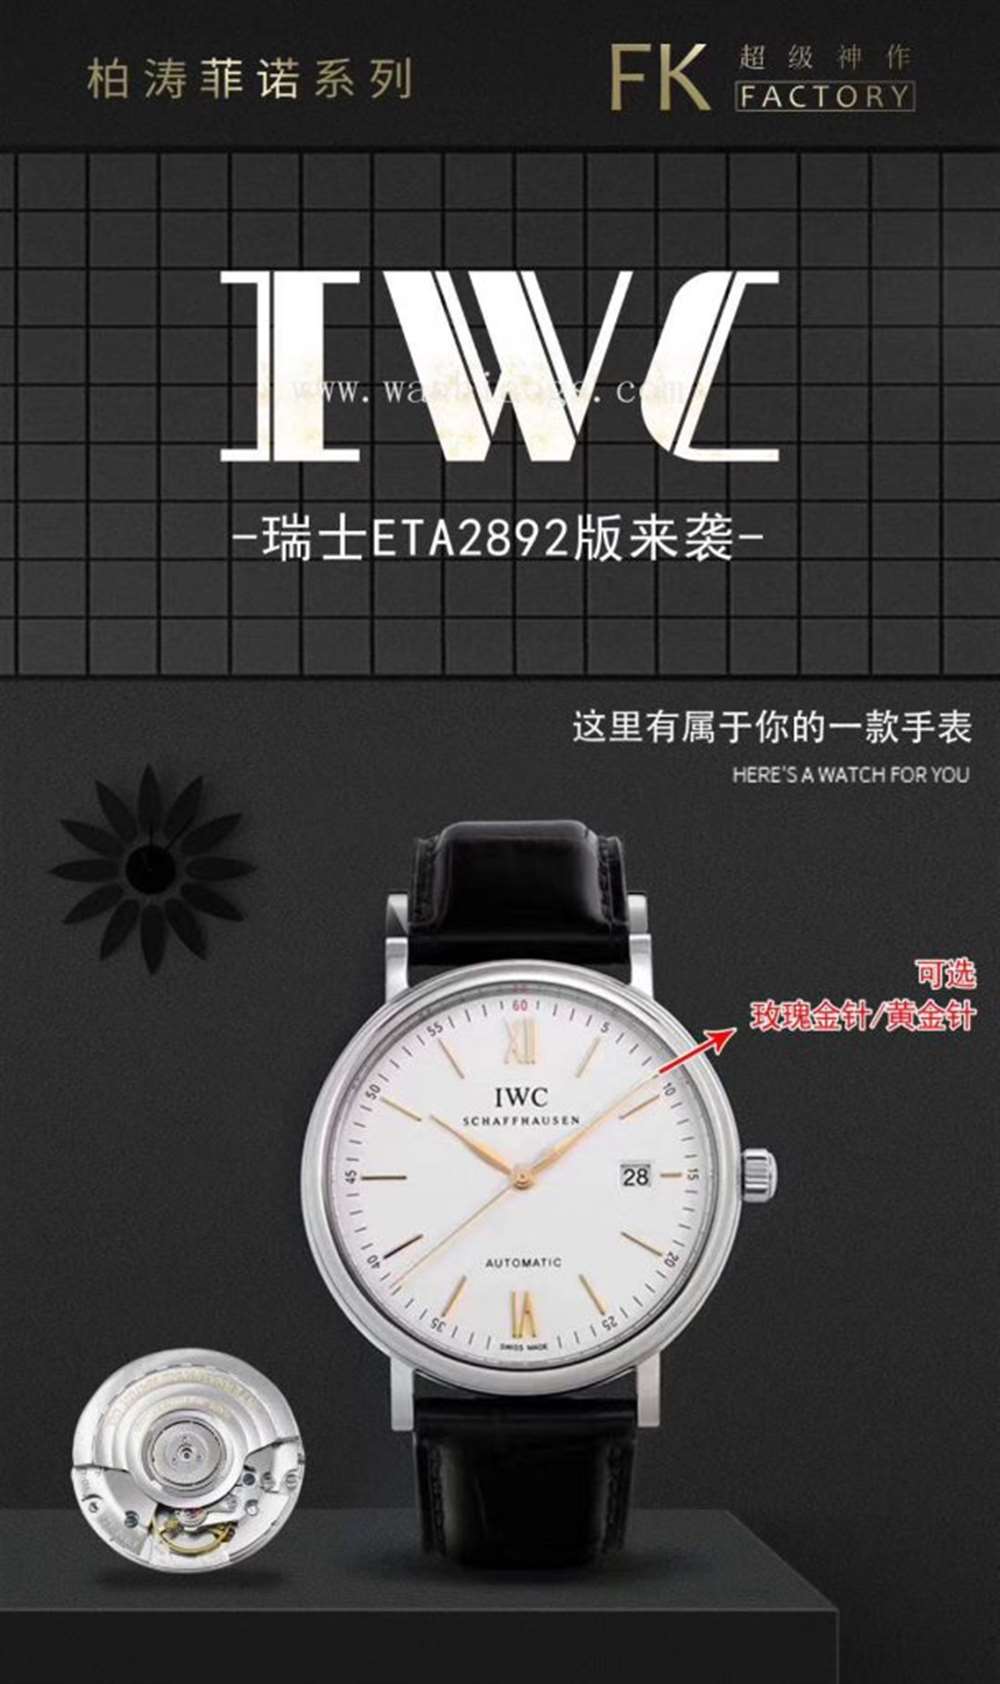 FK厂万国柏涛菲诺系列IW35630腕表—对比正品评测  第11张